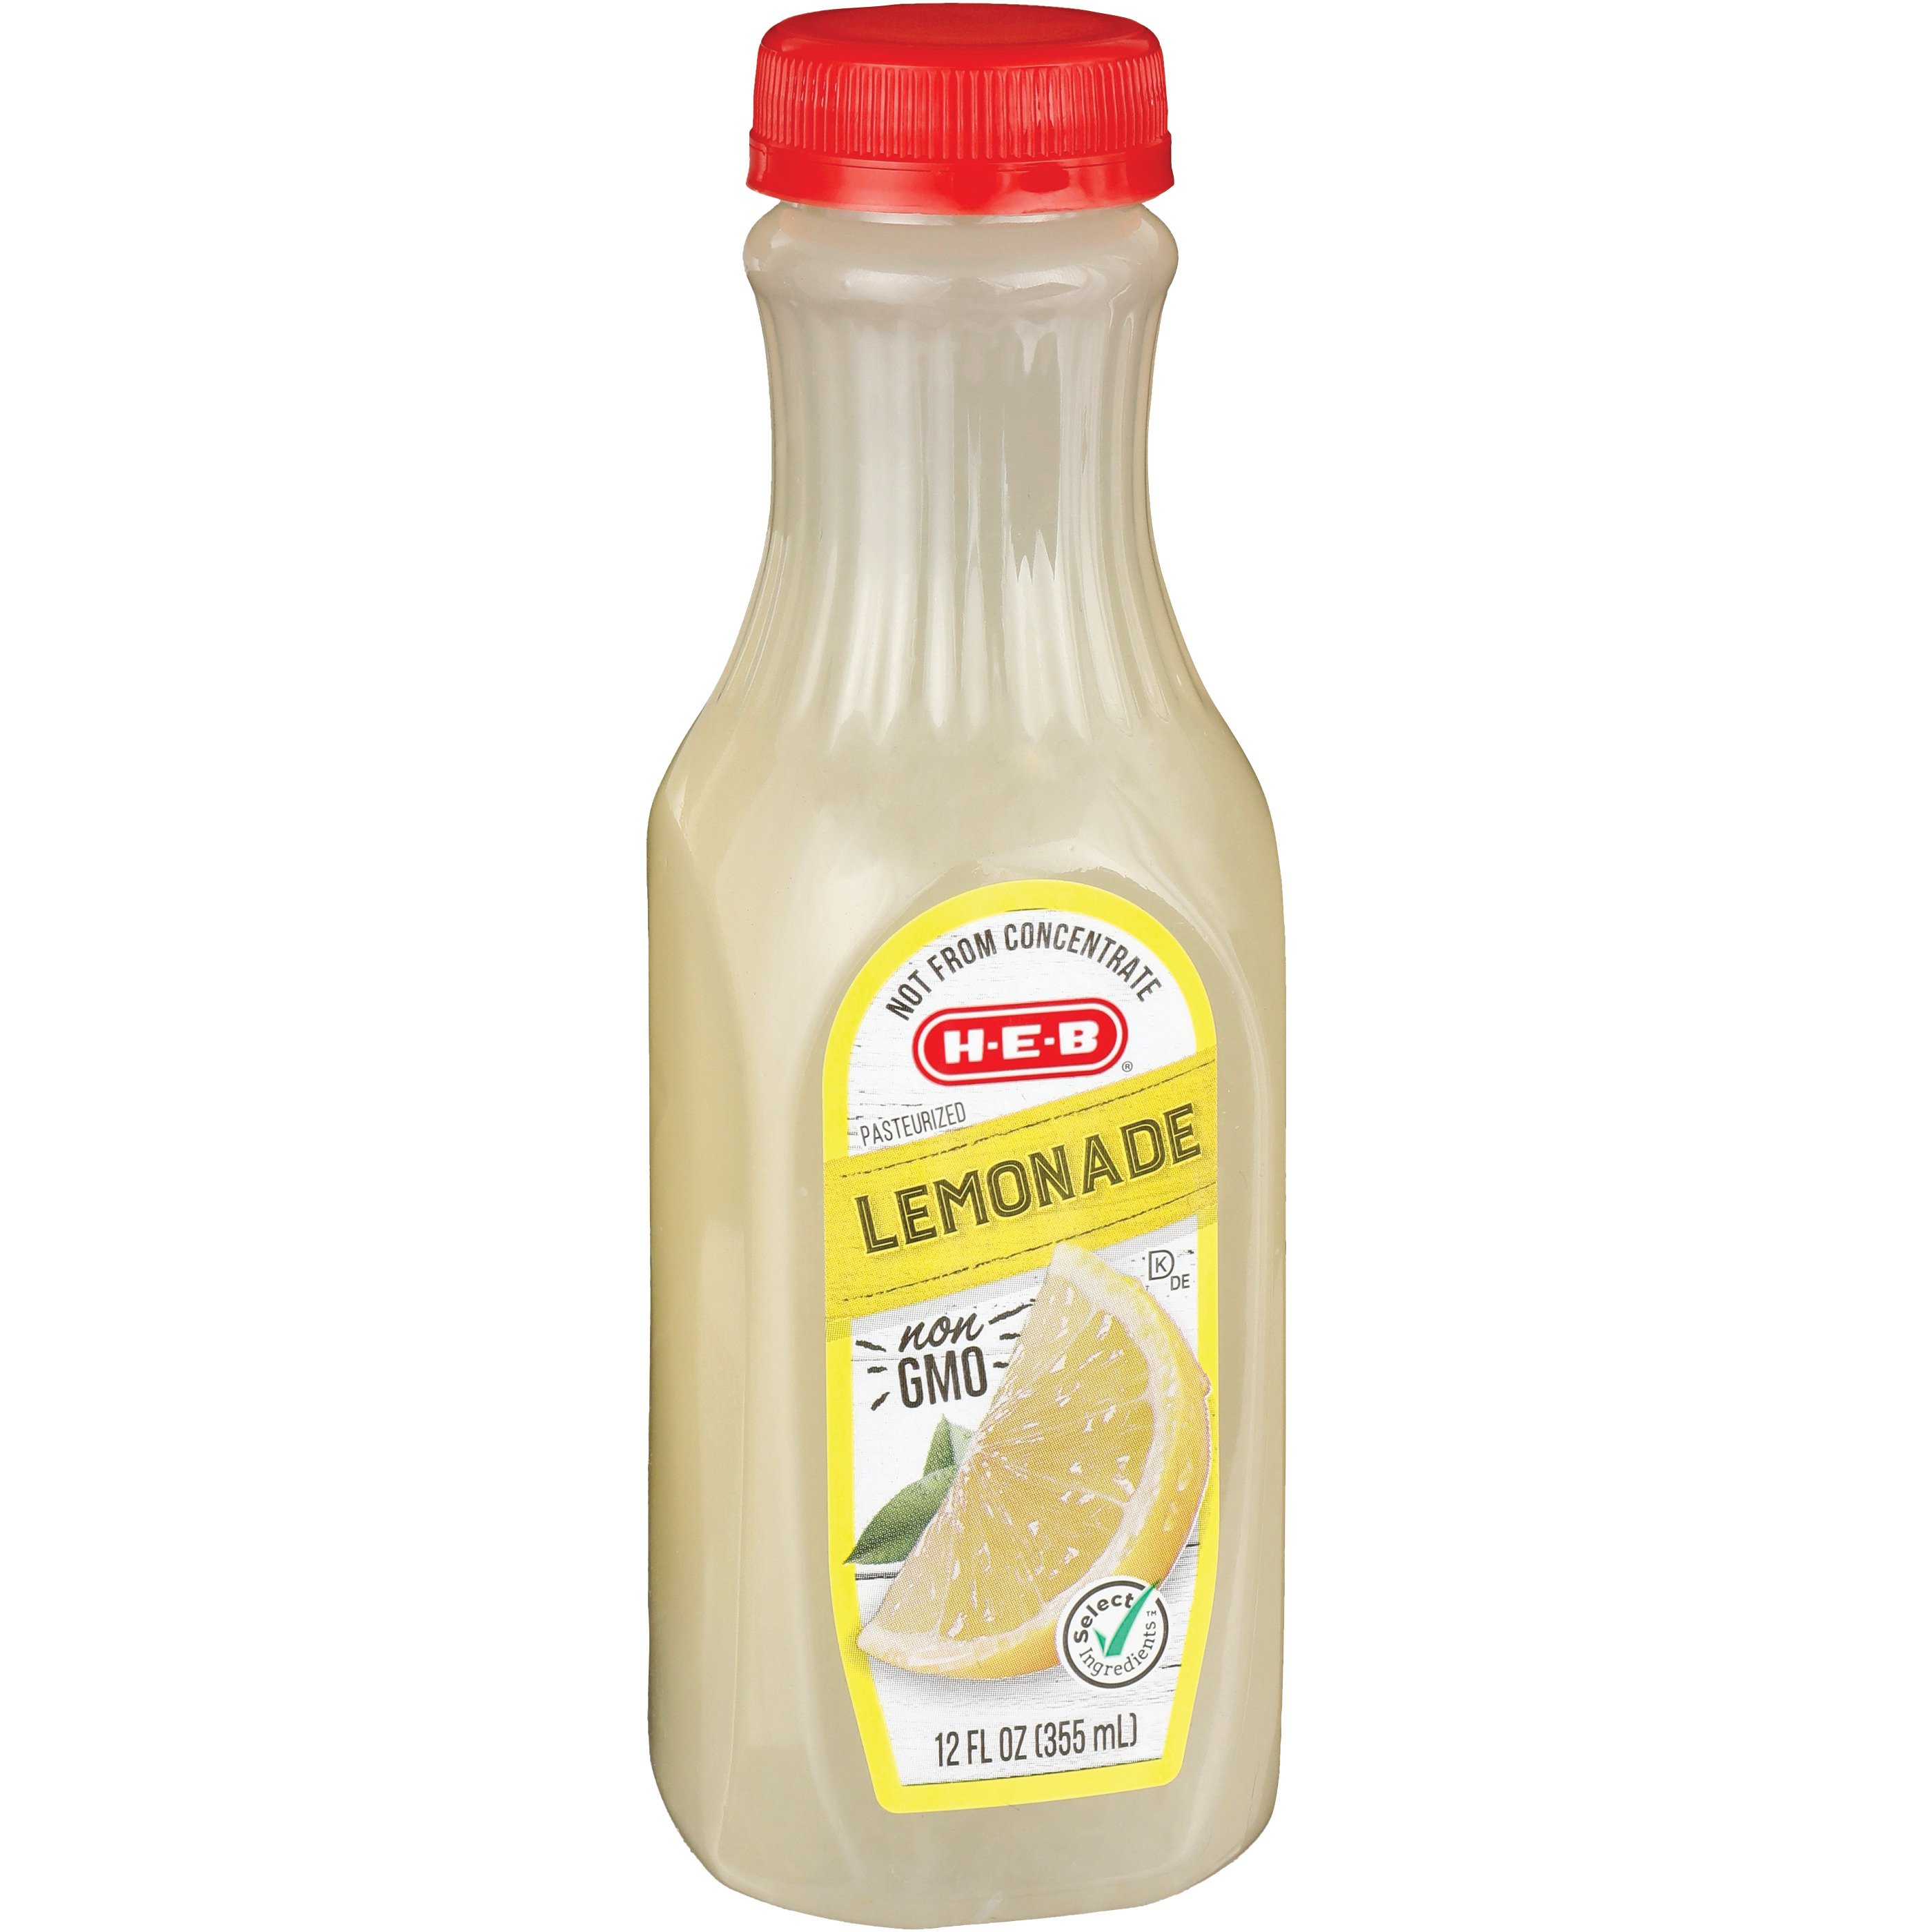 H E B Lemonade Shop Juice At H E B 4028